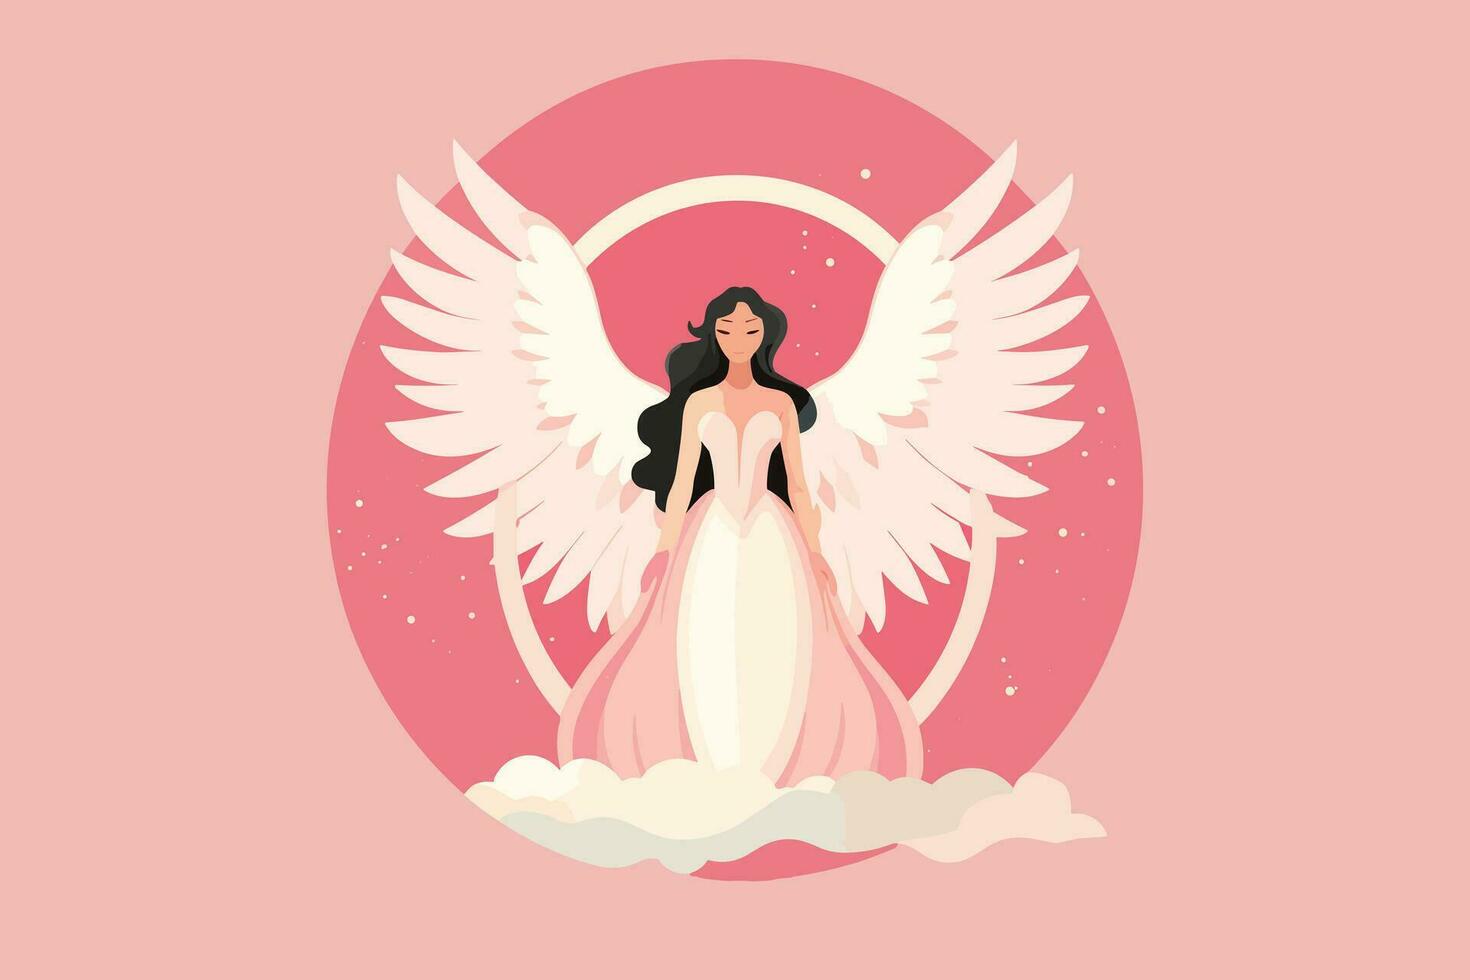 mooi fee met een engelachtig aura illustratie, engel met Vleugels illustratie in roze achtergrond vector